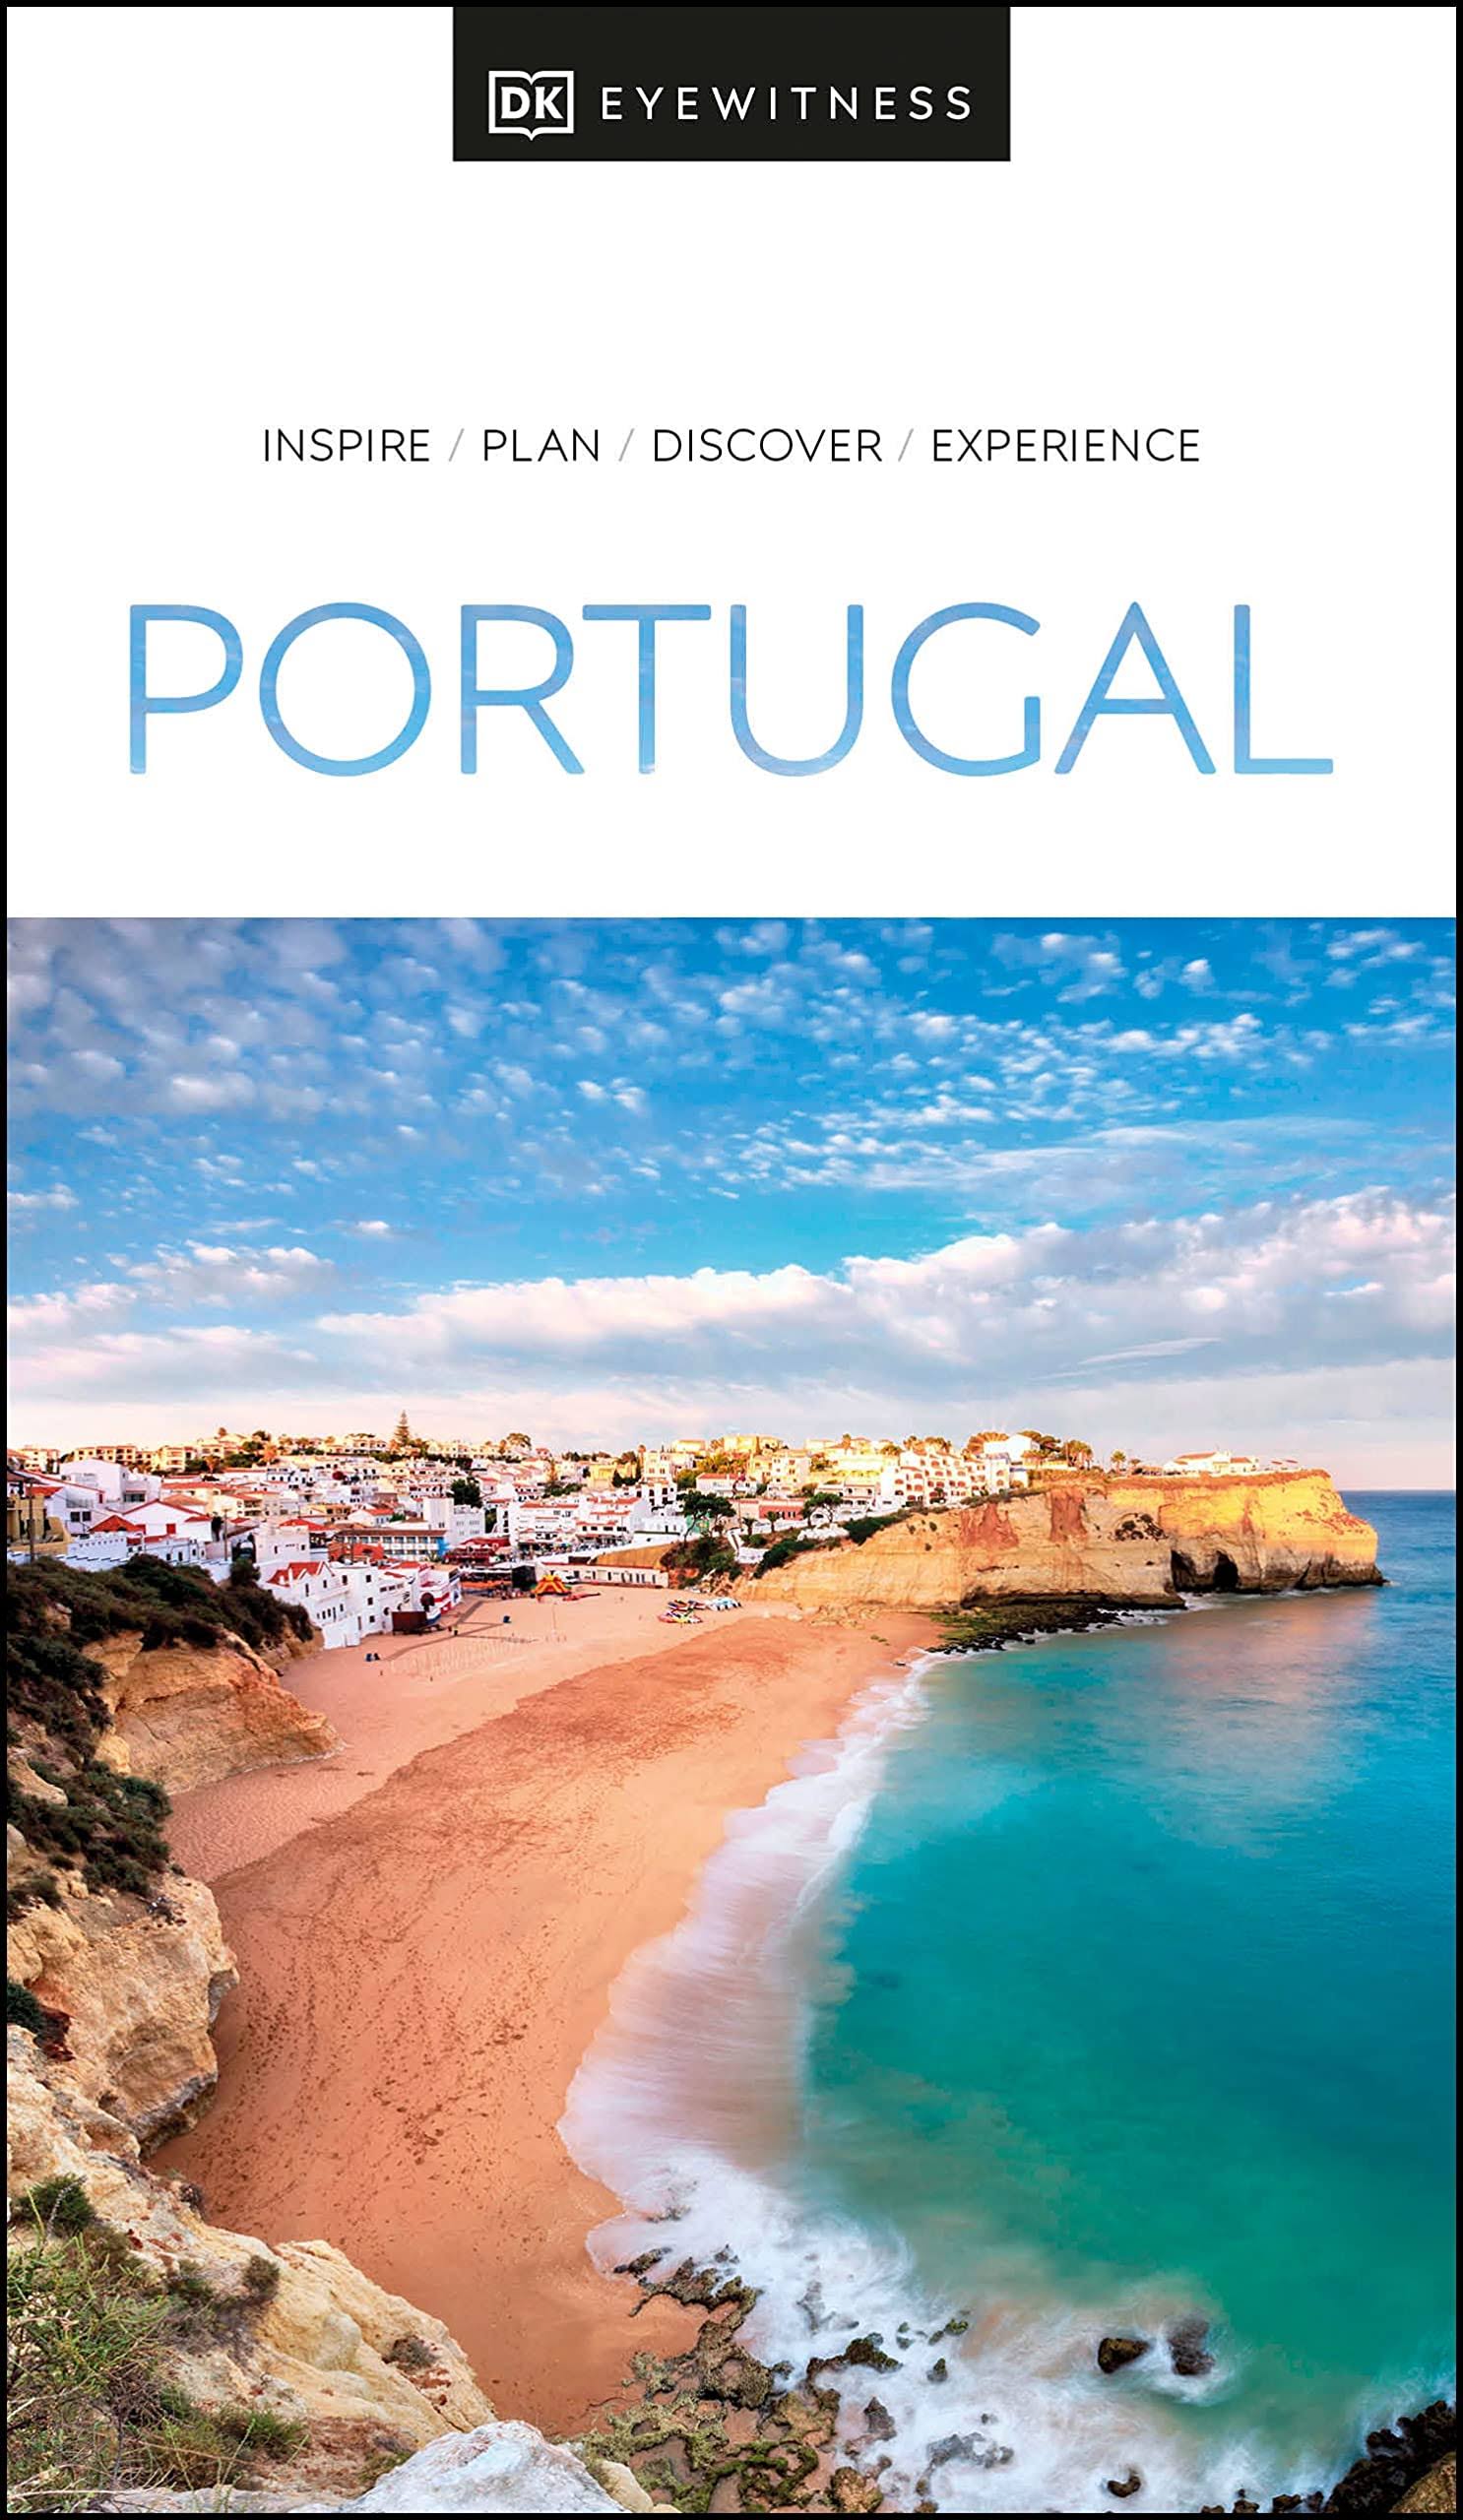 DK Eyewitness Portugal [Book]